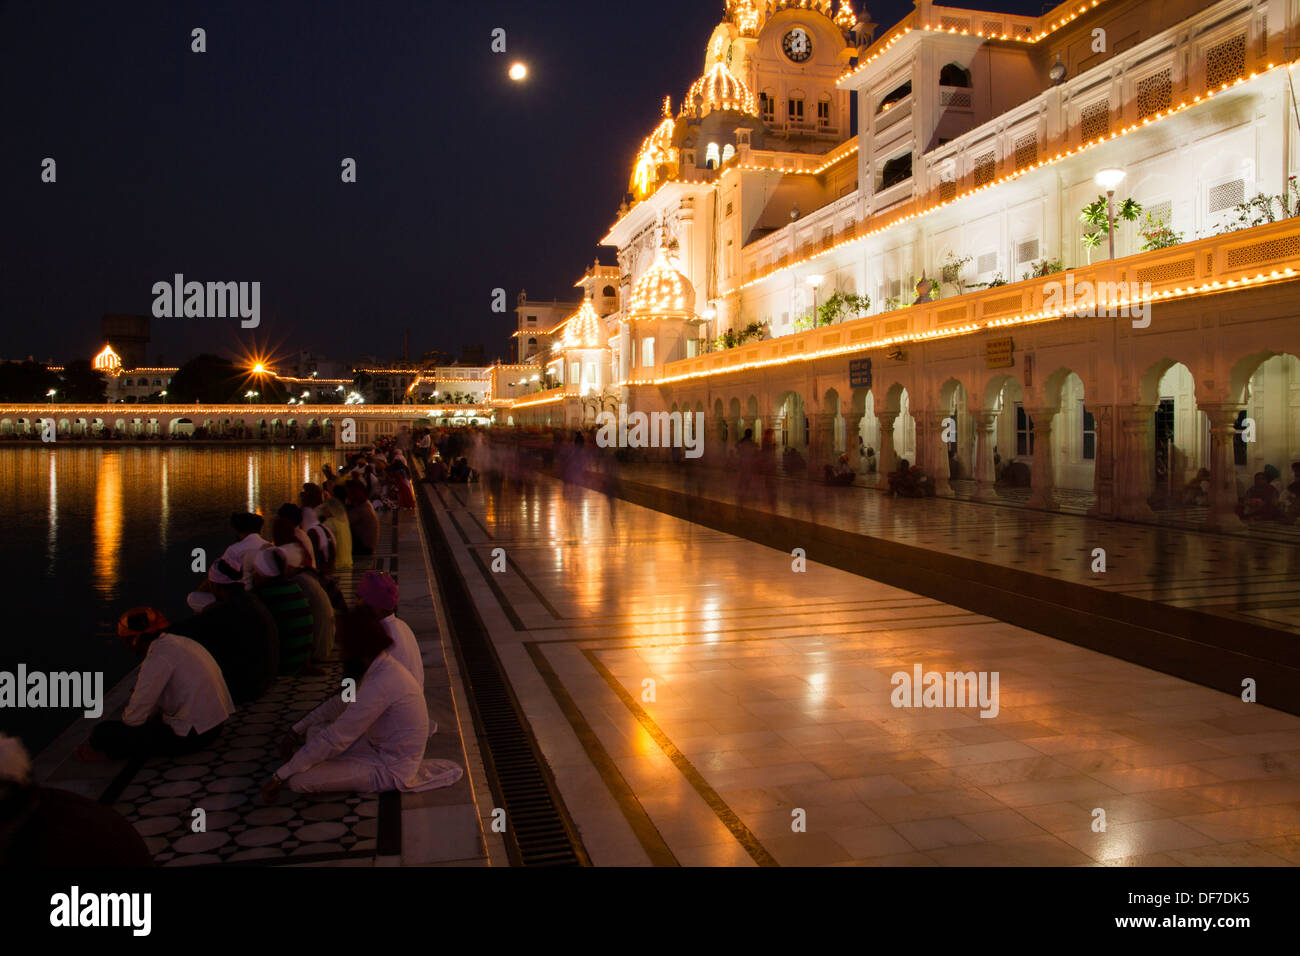 Harmandir Sahib or Golden Temple at night, Amritsar, Punjab, India Stock Photo